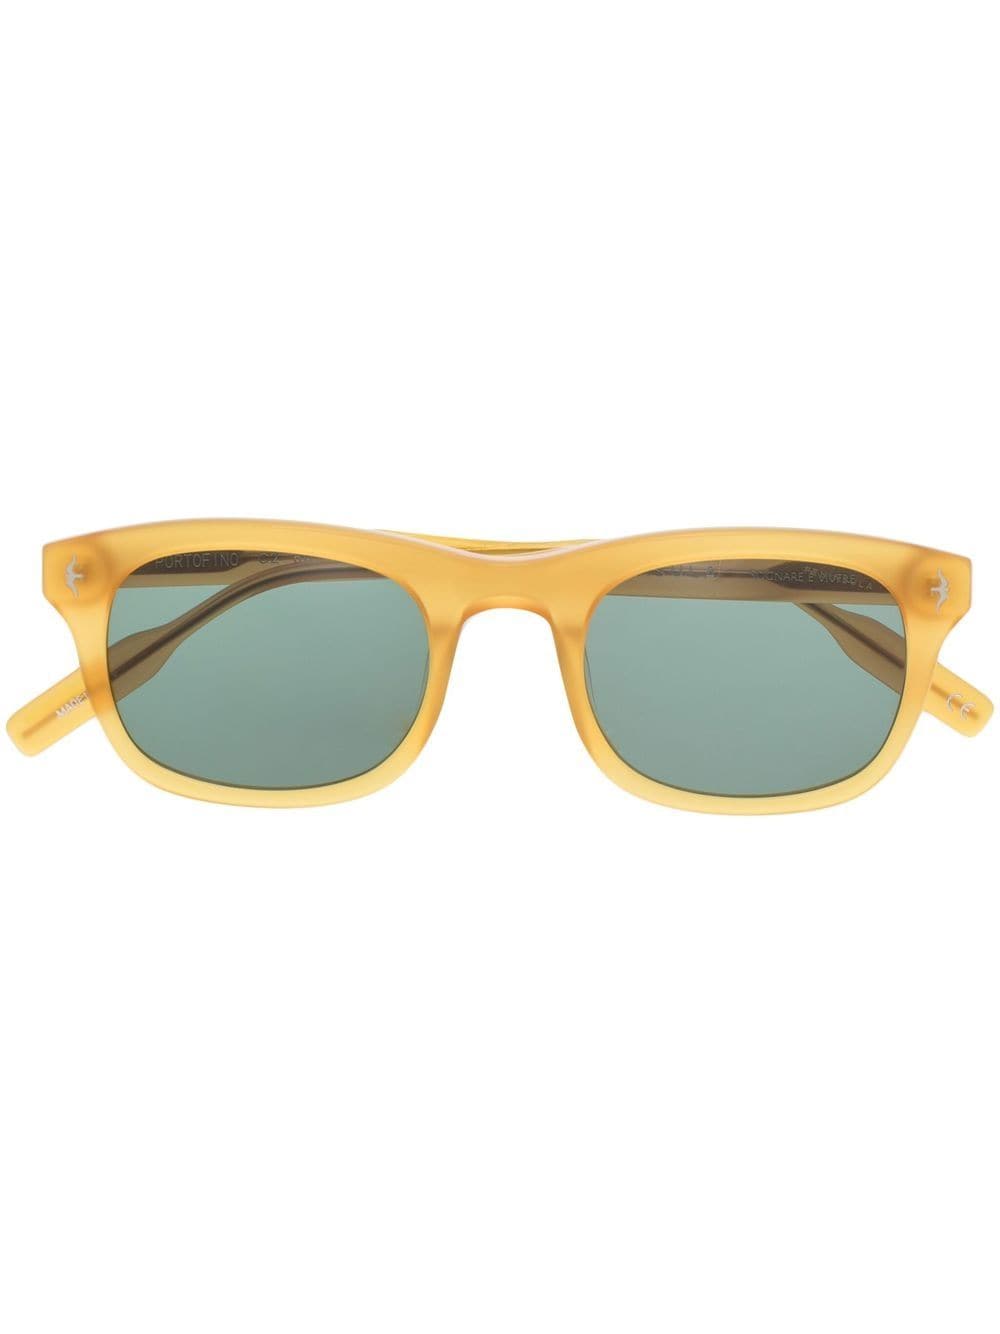 PENINSULA SWIMWEAR Portofino oval-frame sunglasses - Yellow von PENINSULA SWIMWEAR